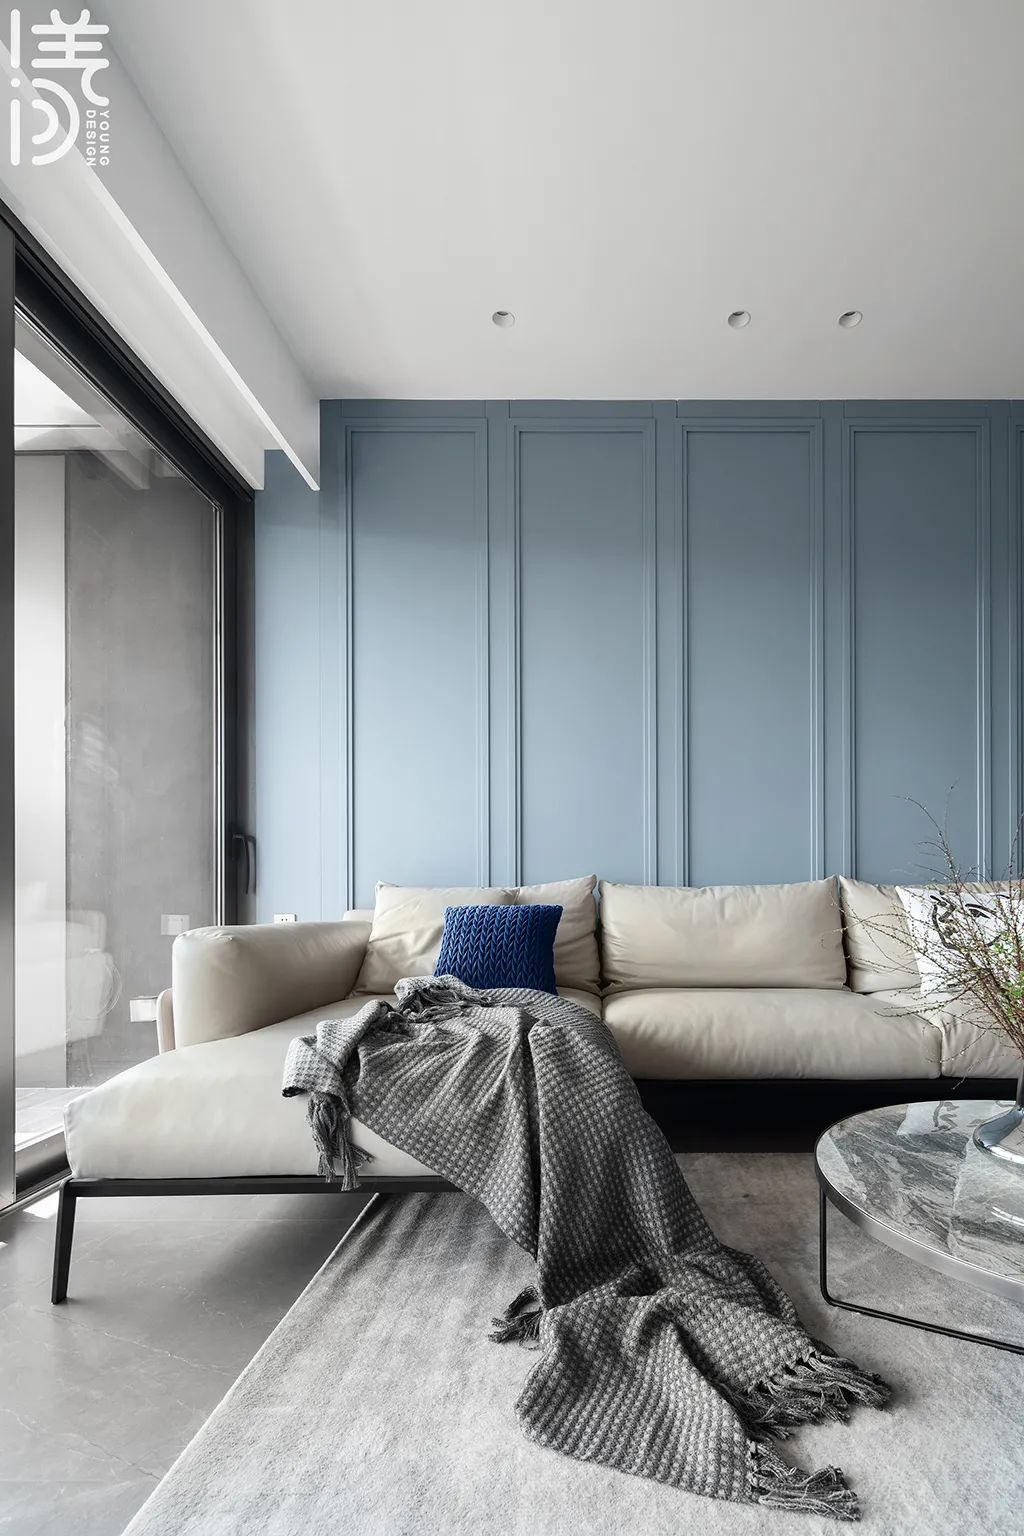 沙发墙是蓝色的护墙板,边框造型让空间显得层次更加丰富,布置灰白色